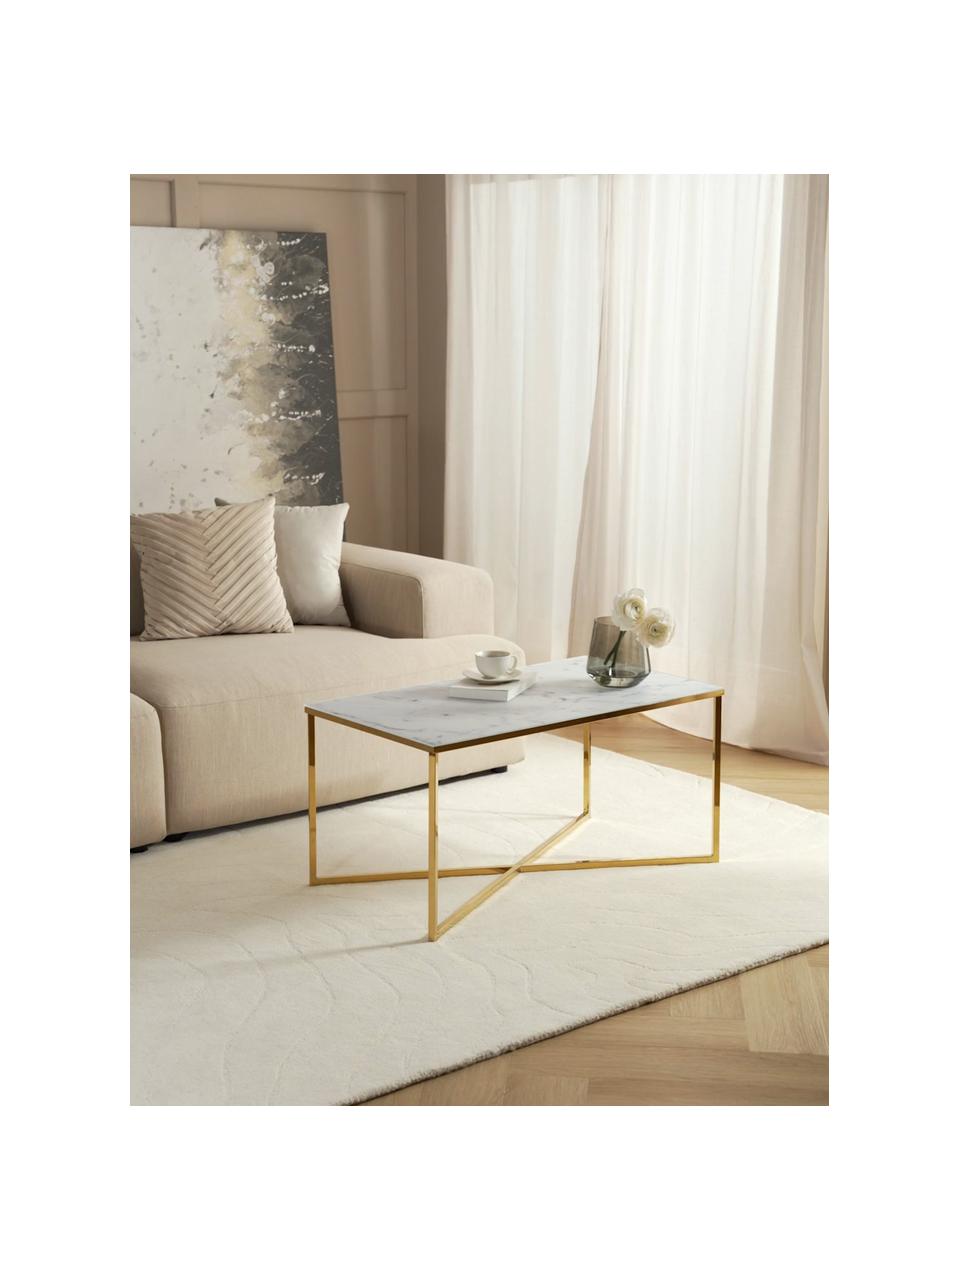 Couchtisch Alisma mit Glasplatte, Tischplatte: Glas, matt bedruckt, Gestell: Stahl, vermessingt, Weiß, marmoriert, Goldfarben, B 90 x T 50 cm